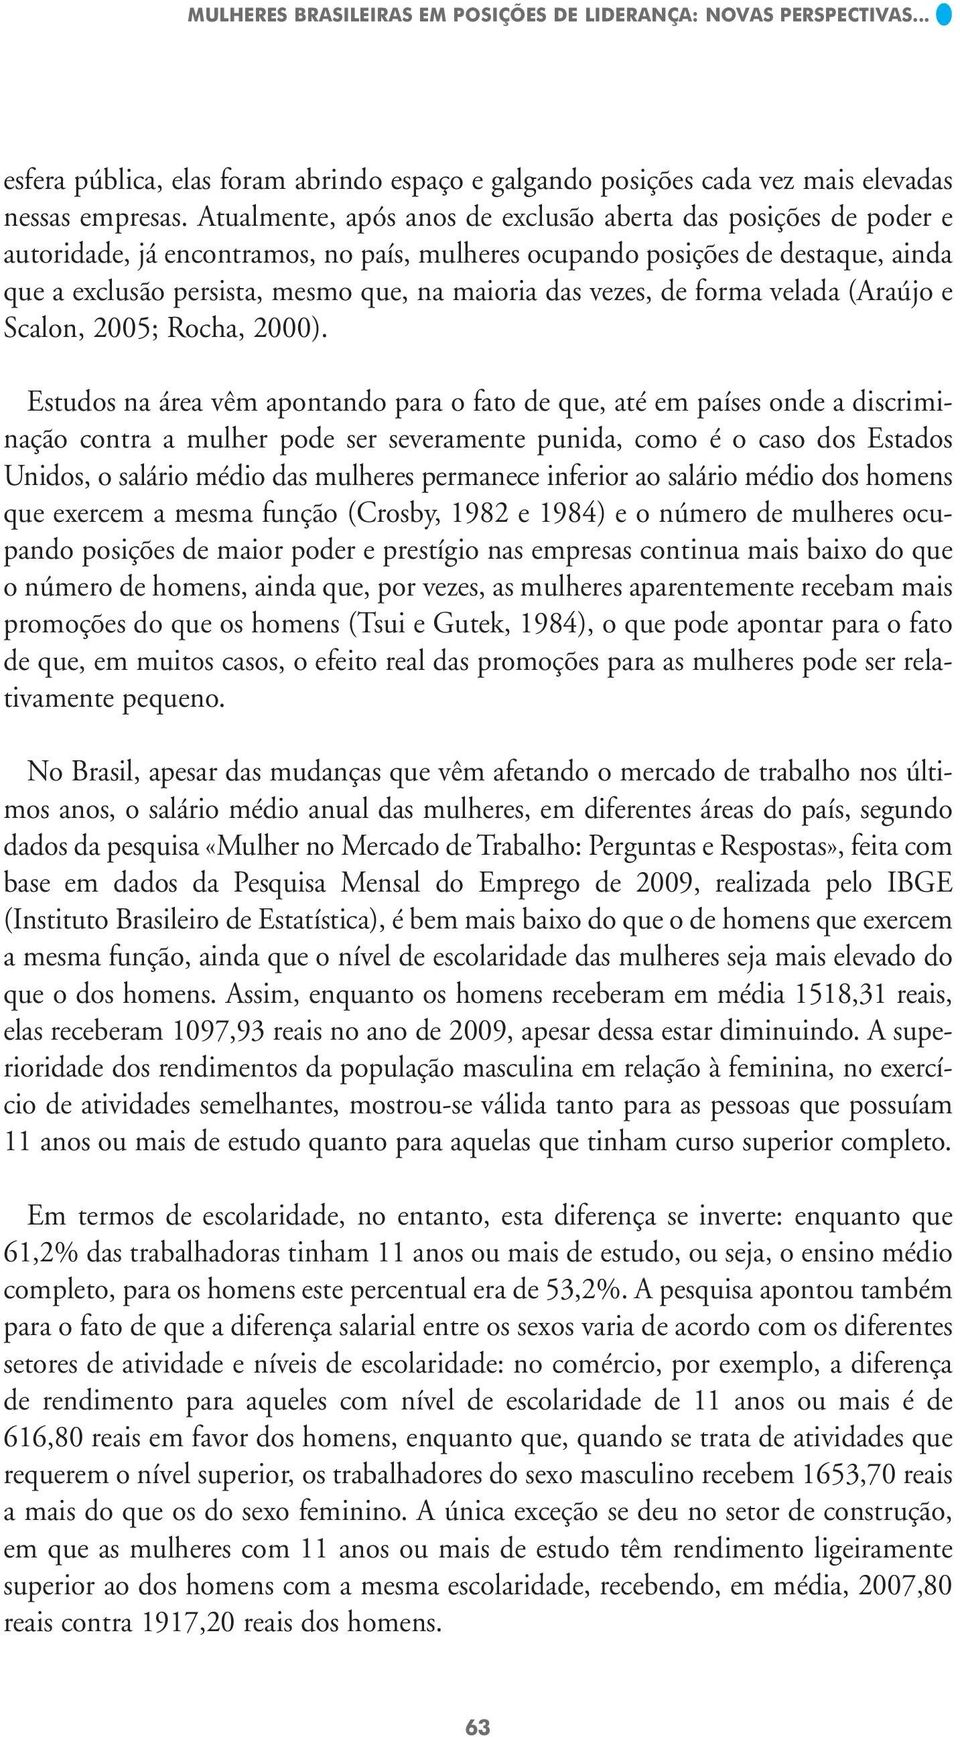 vezes, de forma velada (Araújo e Scalon, 2005; Rocha, 2000).